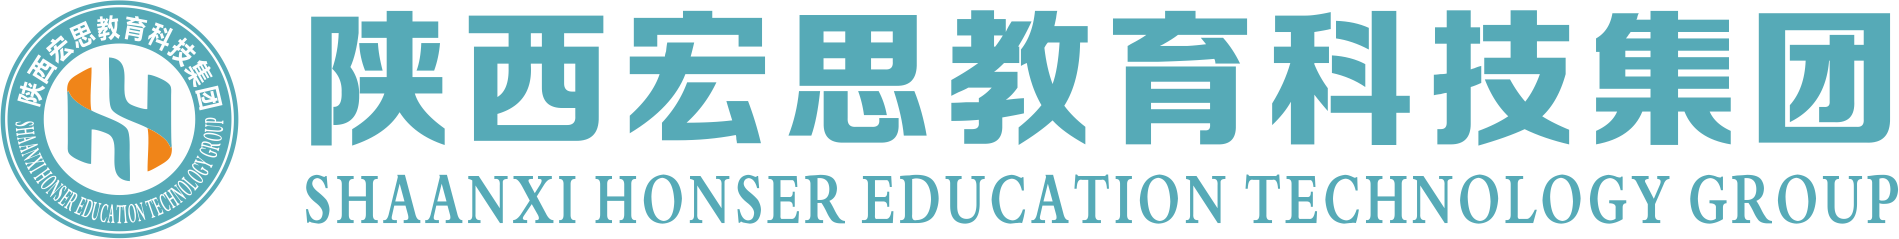 陕西宏思教育科技集团